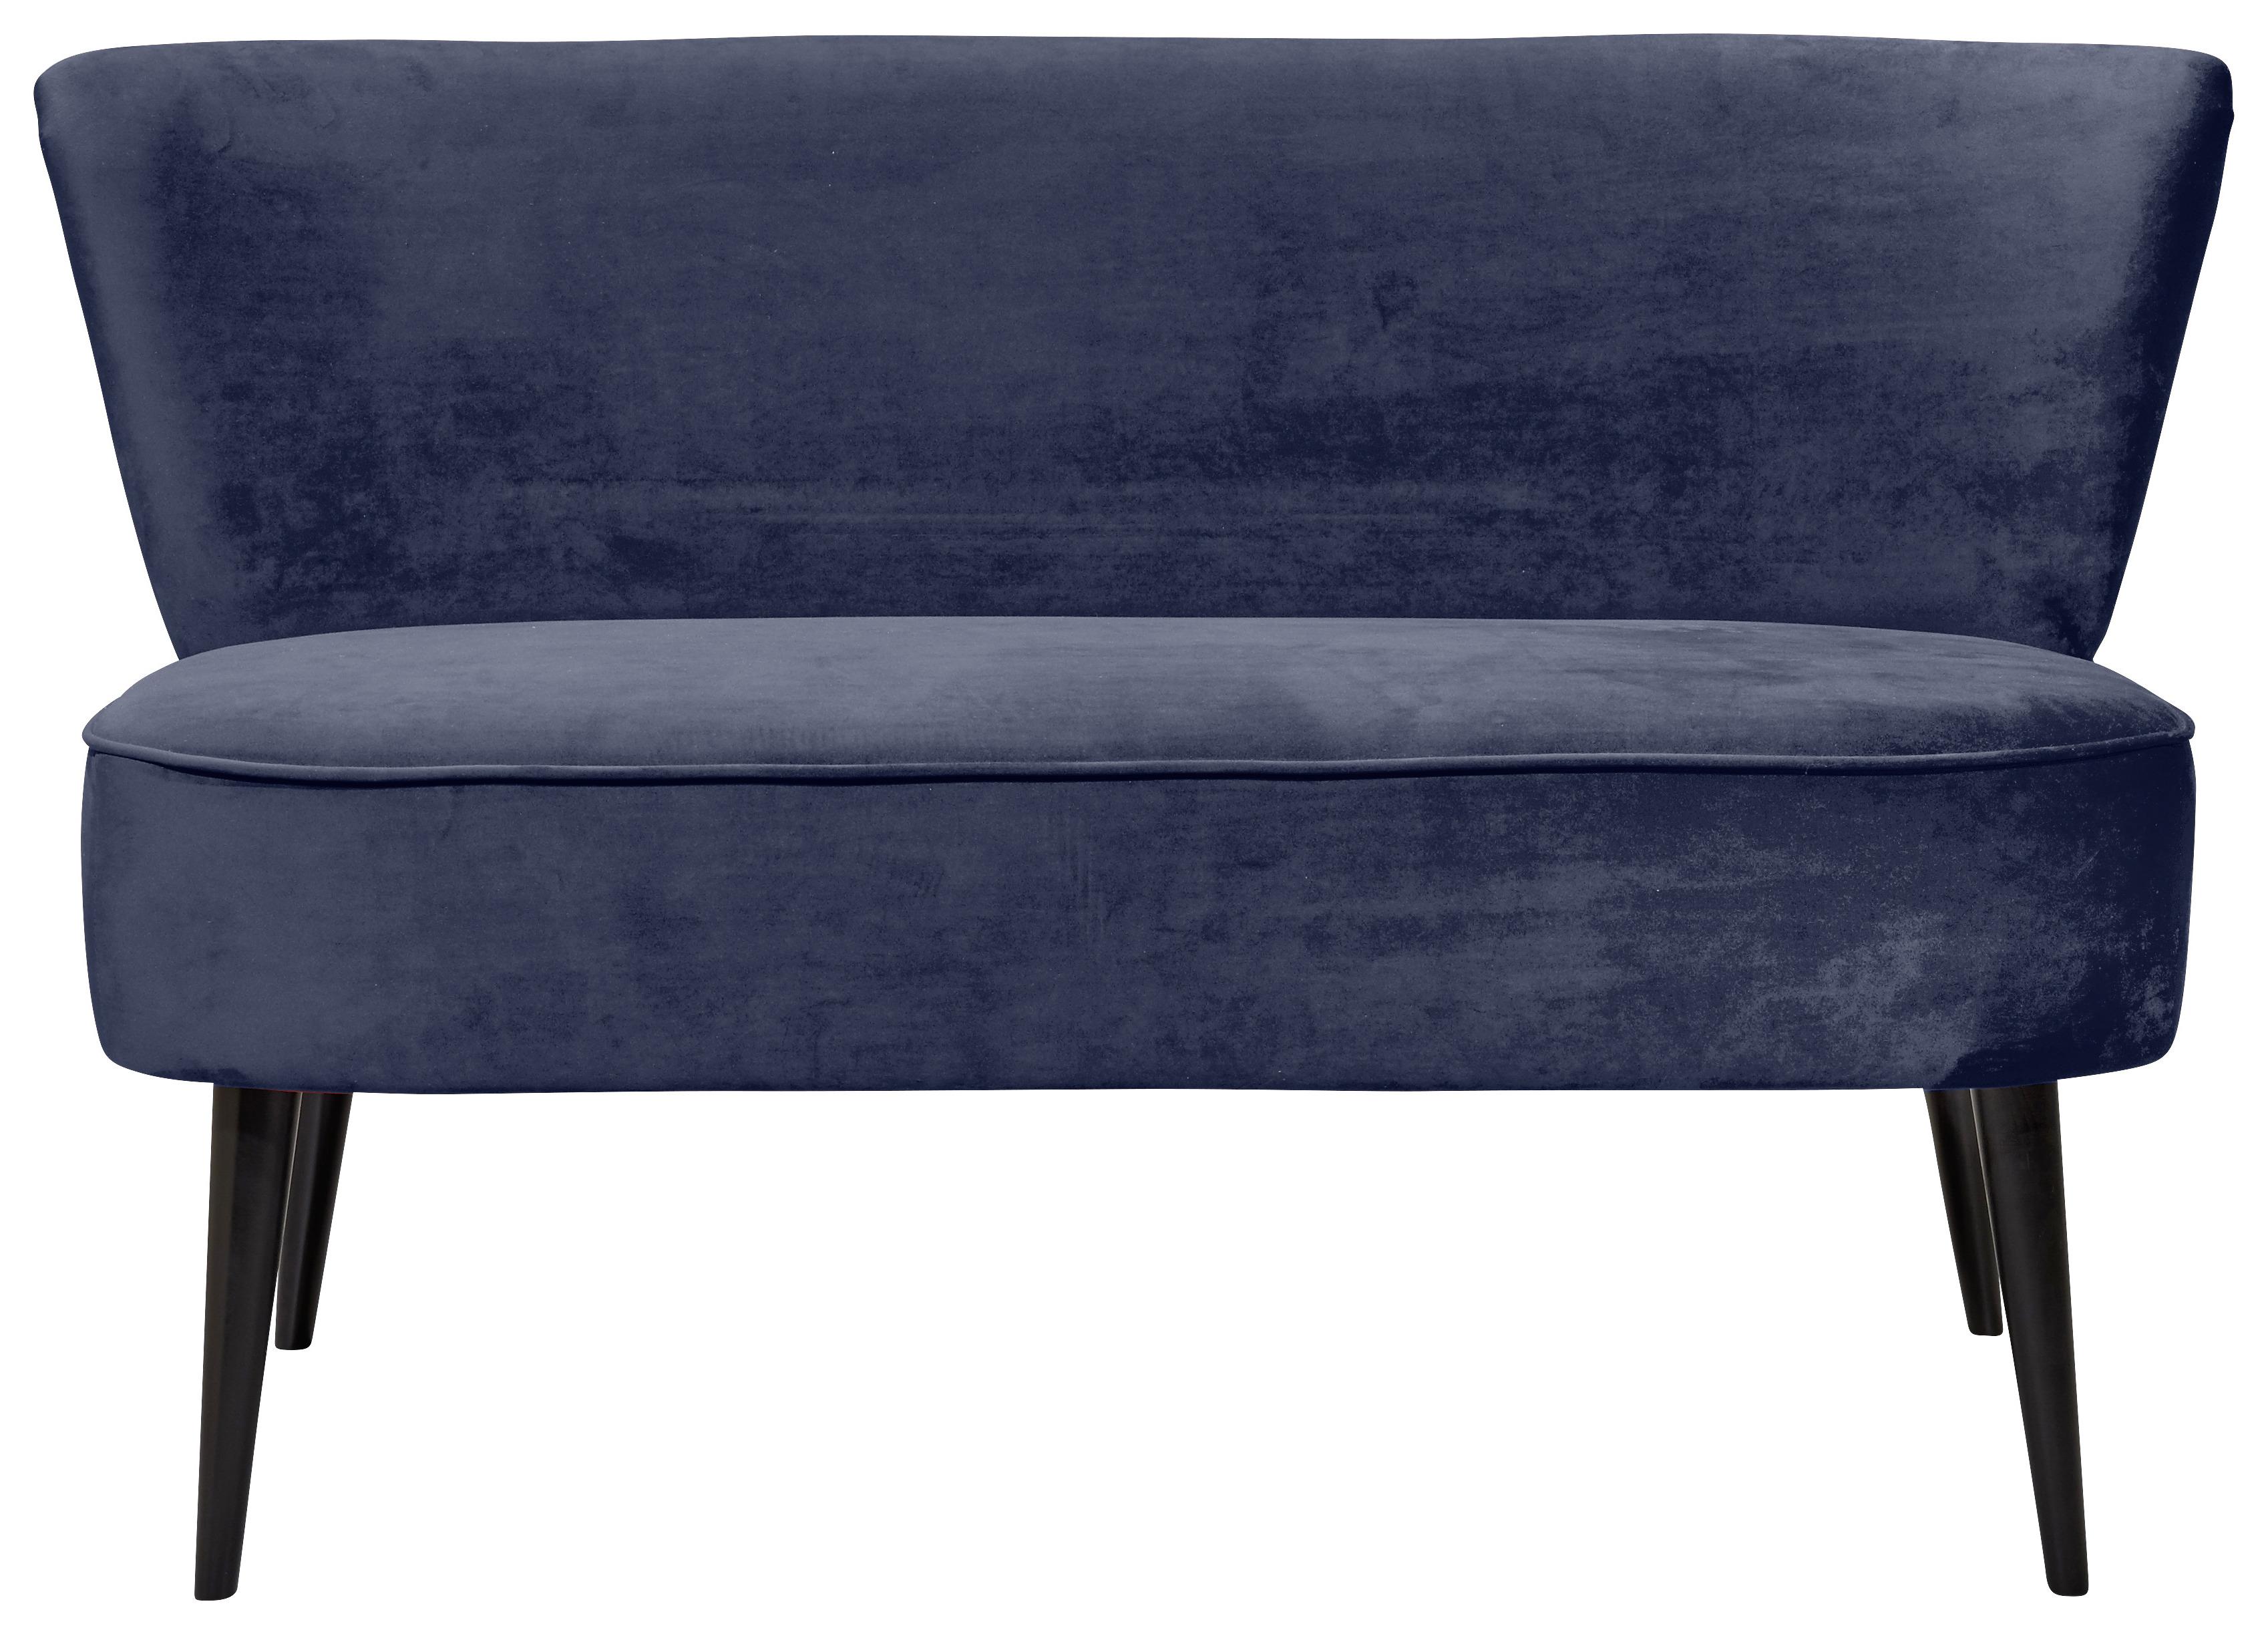 2místna Pohovka Lord-Trend Modrá - modrá/černá, Trend, dřevo/kompozitní dřevo (140/83/75cm) - MID.YOU